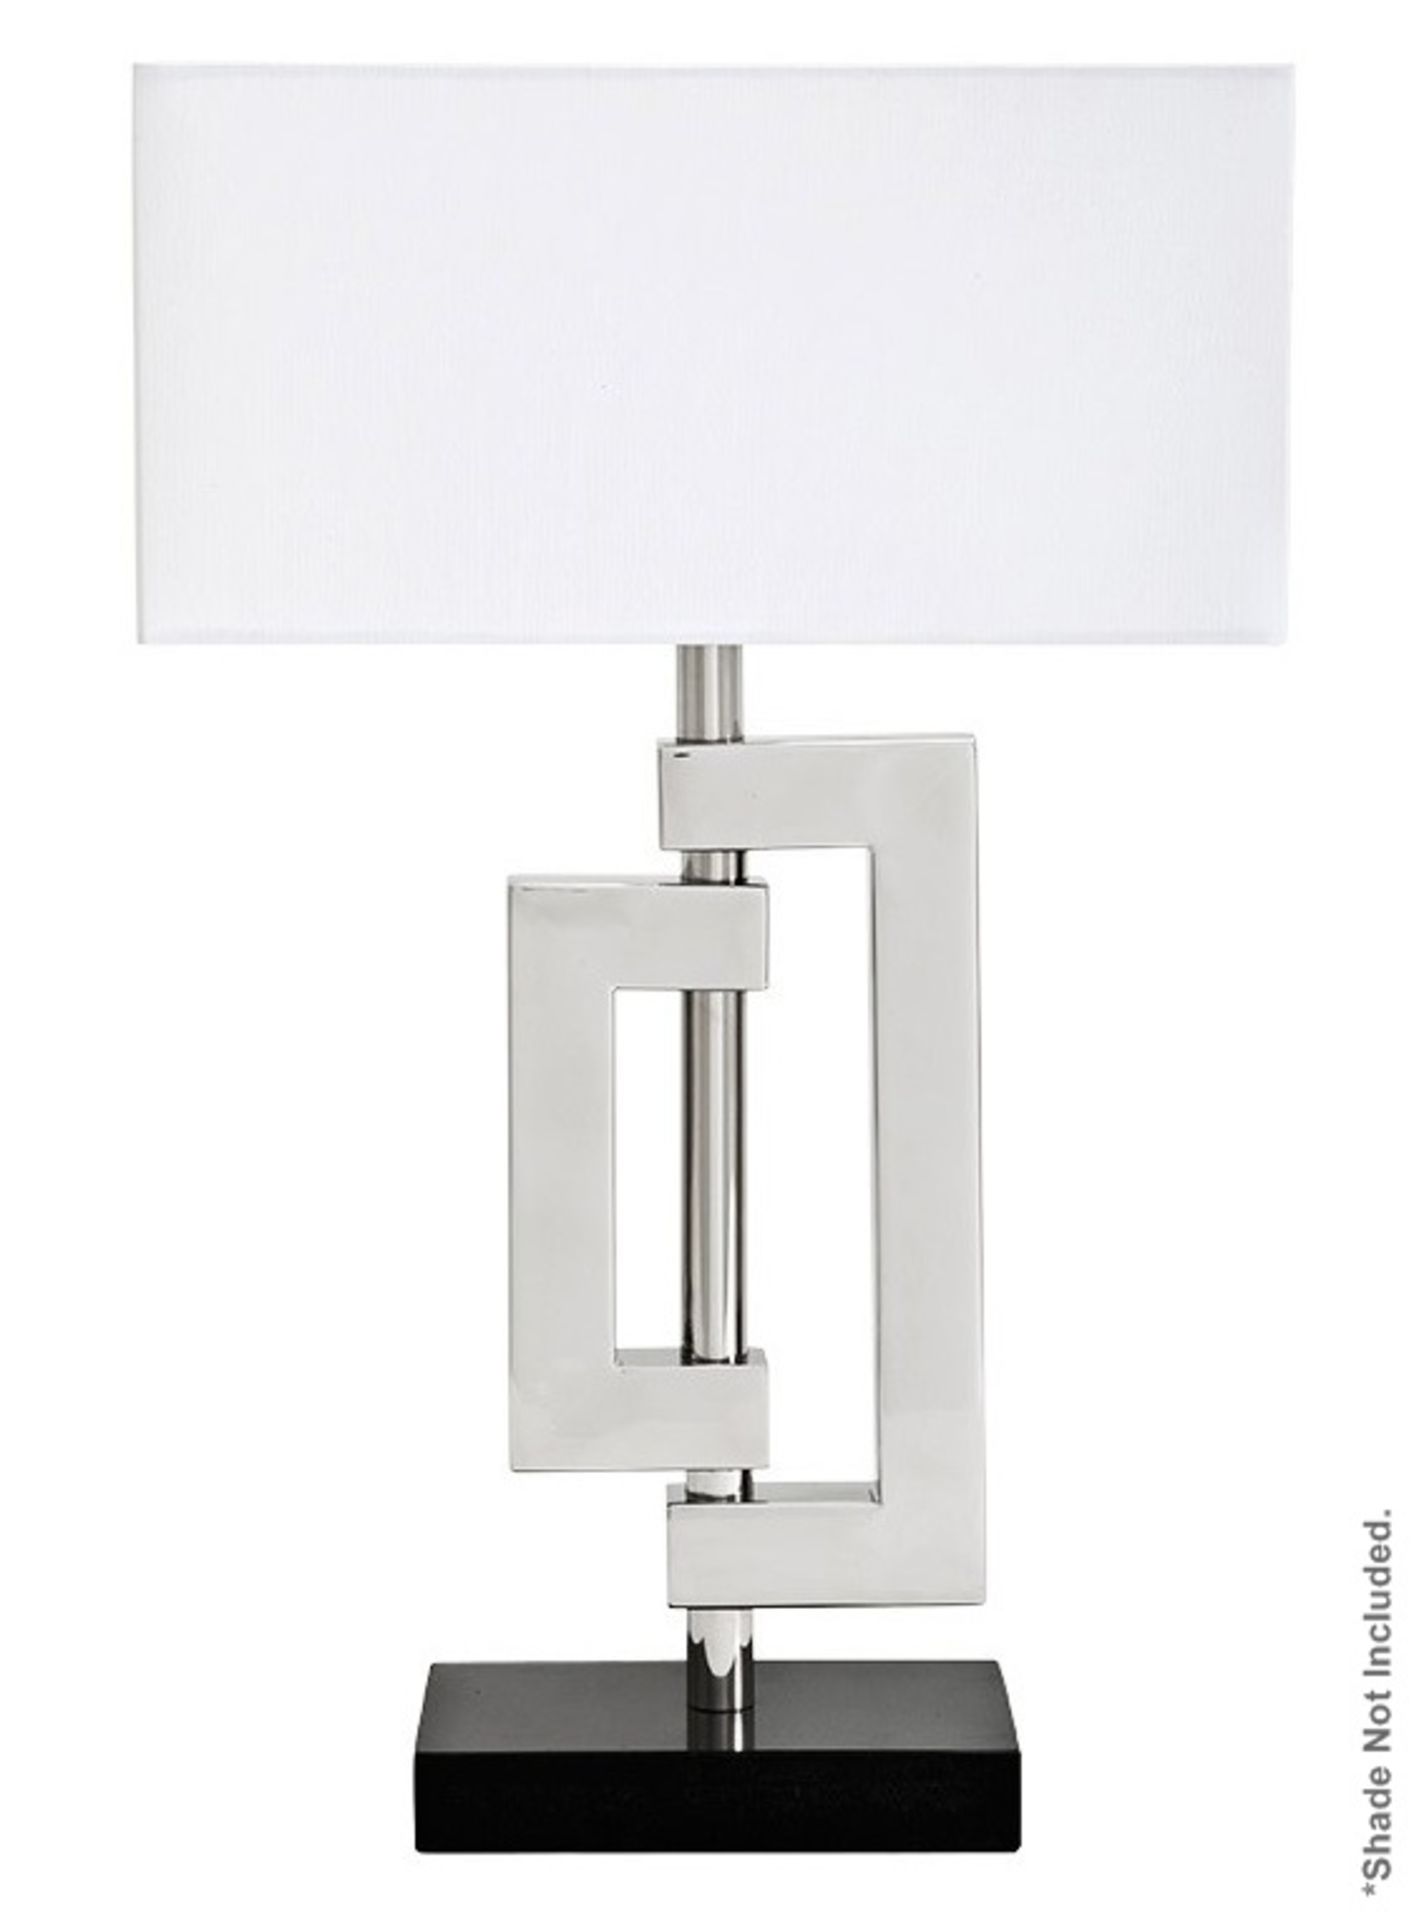 1 x EICHHOLTZ "Leroux" Table Lamp - Dimensions: H52 x D14 x W22.5cm - Ref: 5052001A - CL087 -